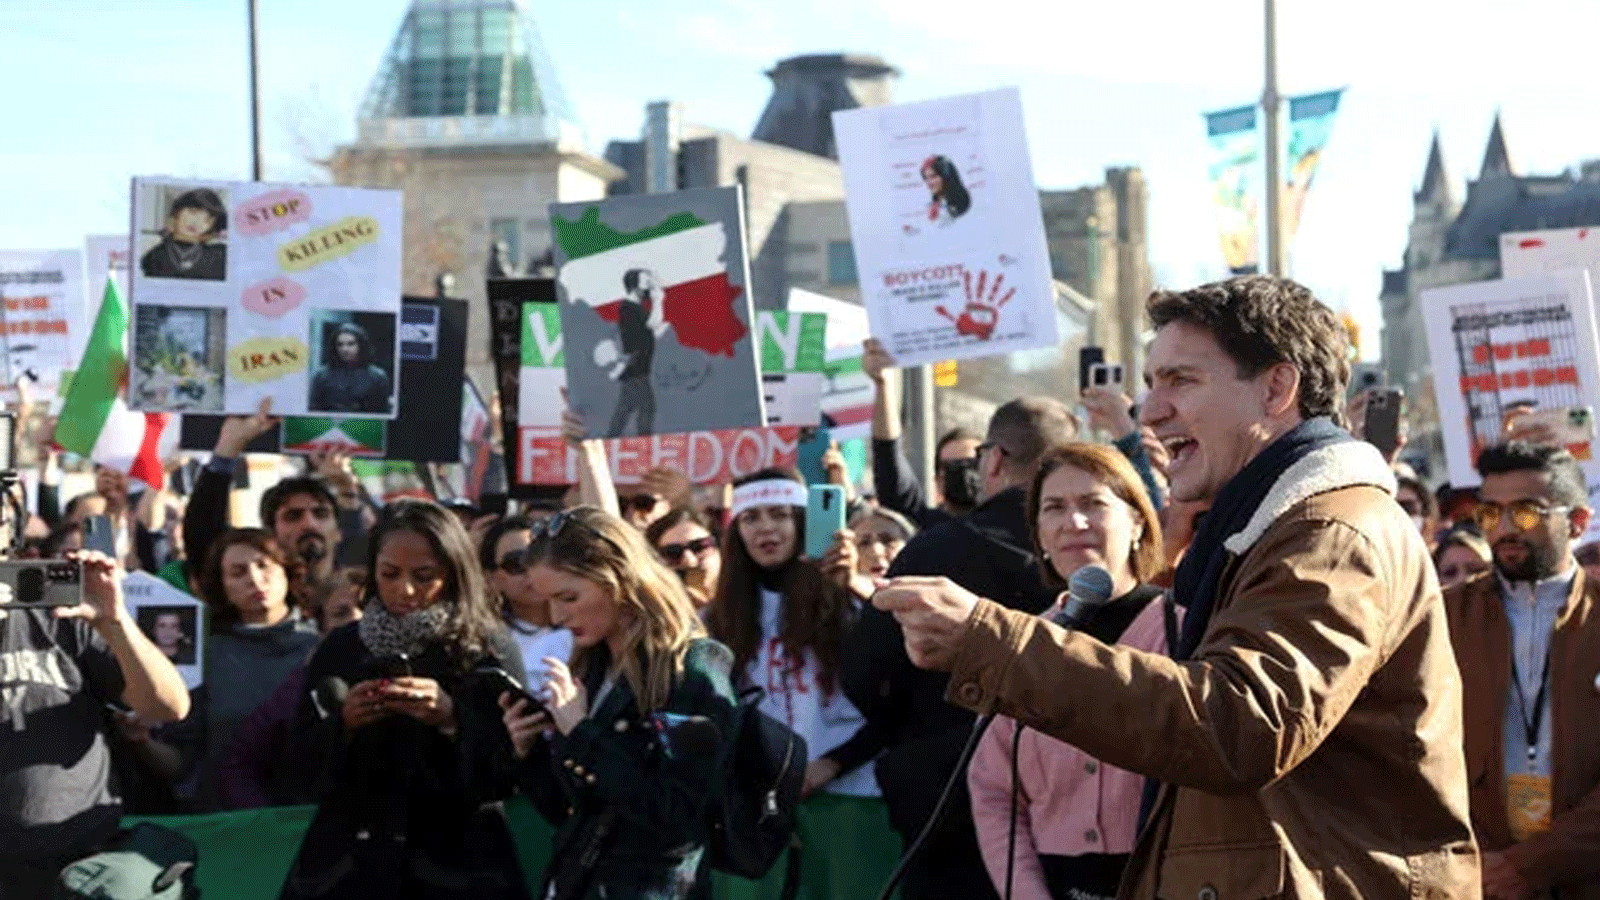 رئيس الوزراء الكندي جاستن ترودو يتحدث في احتجاج لدعم حرية المرأة في إيران. 29 تشرين الأول\أكتوبر 2022 في أوتاوا، كندا.